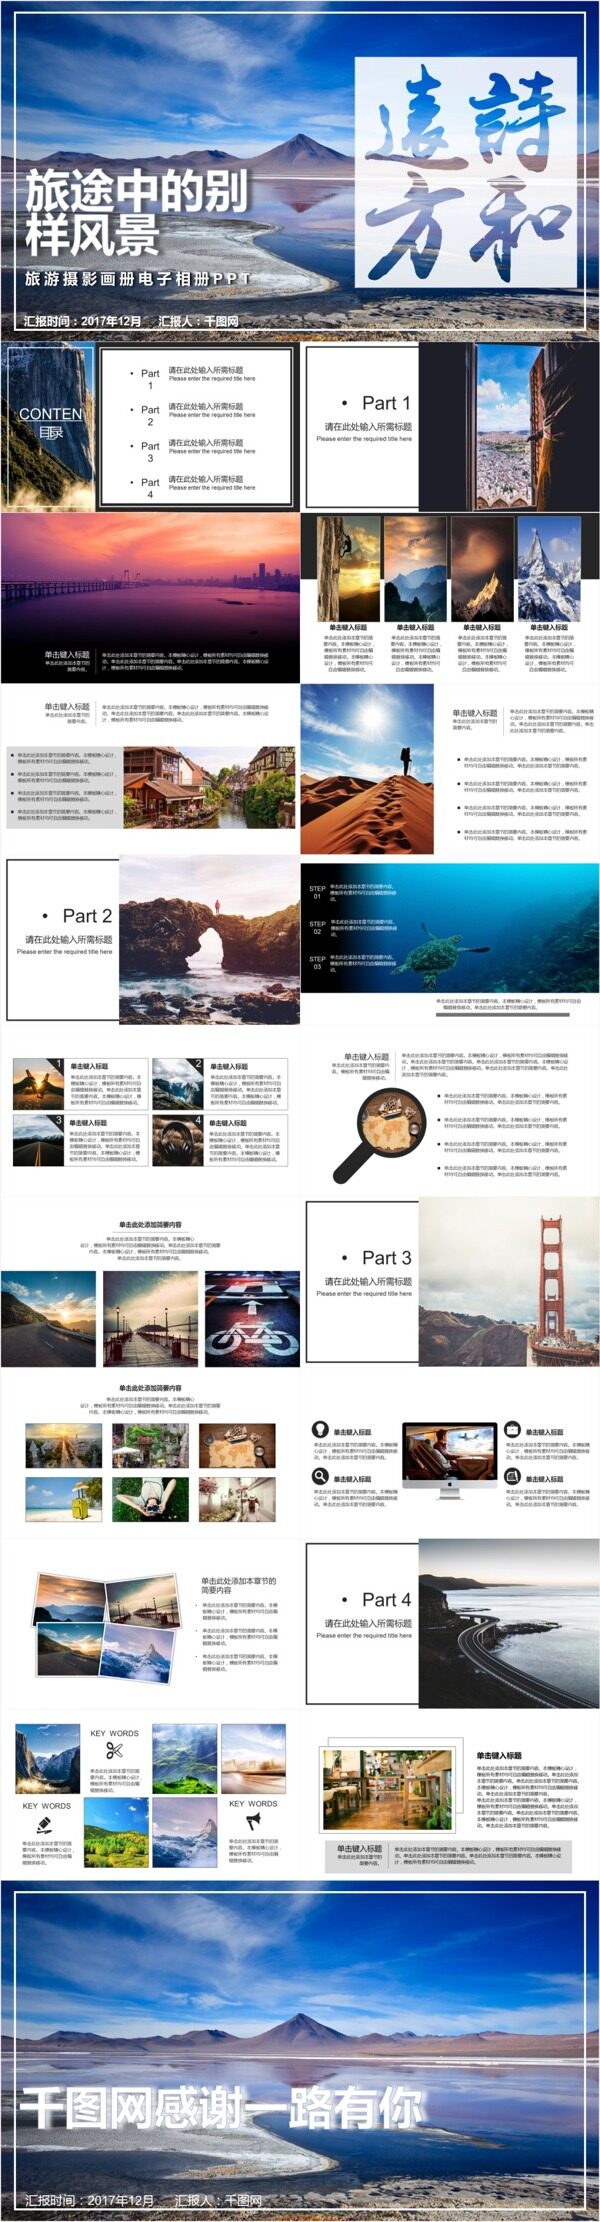 杂志风旅游摄影电子相册画册景点宣传PPT模板